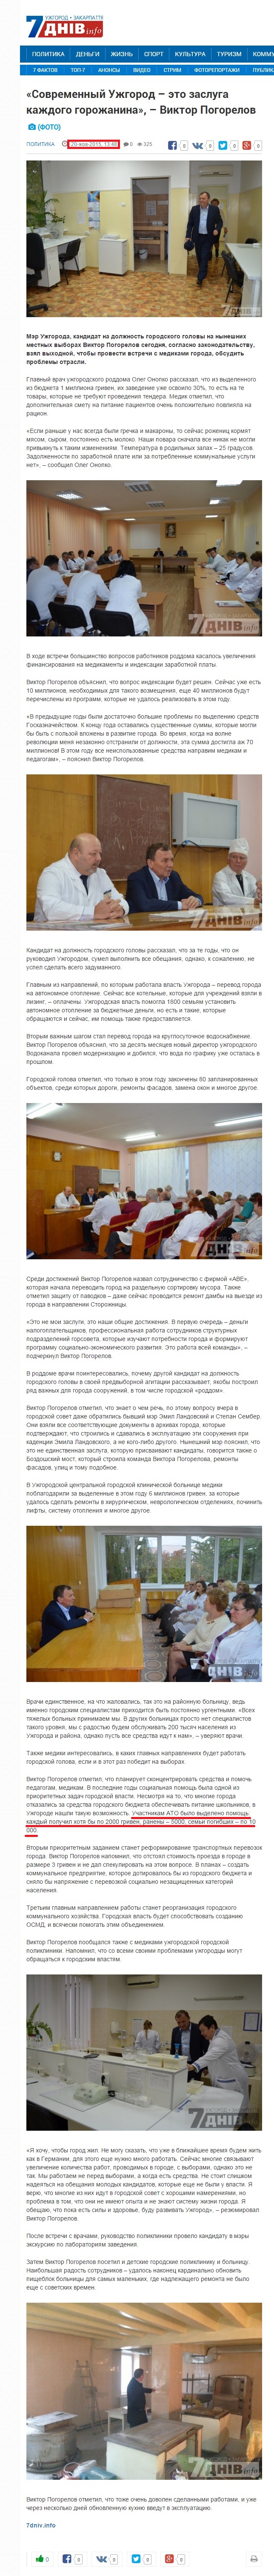 http://7dniv.info/lang-ru/politics/65409-suchasniy-uzhgorod-ce-zasluga-kozhnogo-mstianina-vktor-pogorielov.html